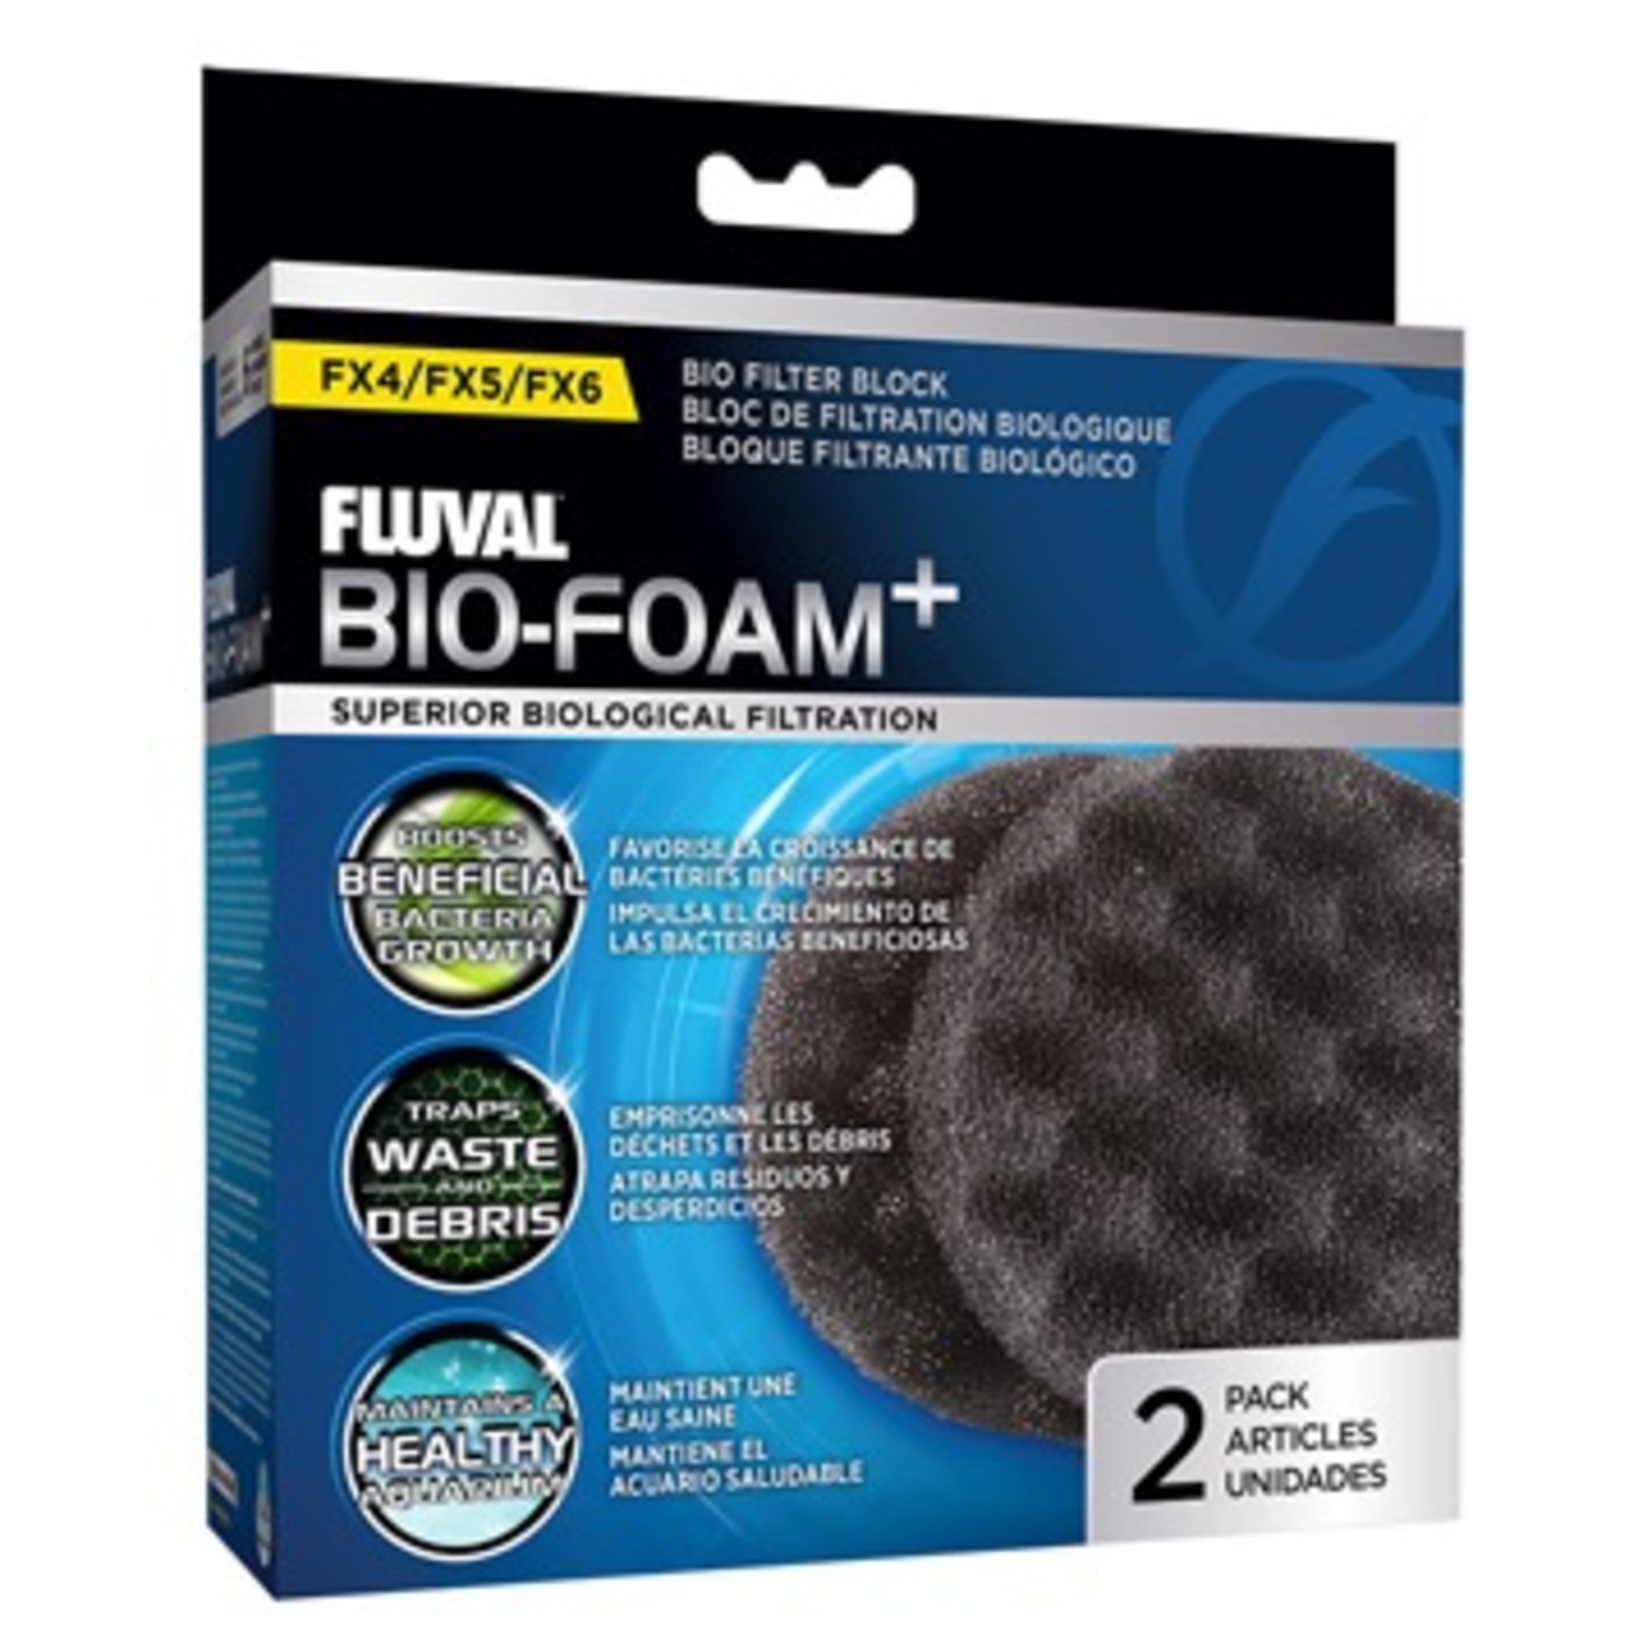 FLUVAL (W) FL FX4/FX5/FX6 Bio-Foam Plus Filter Pads- 2 pack